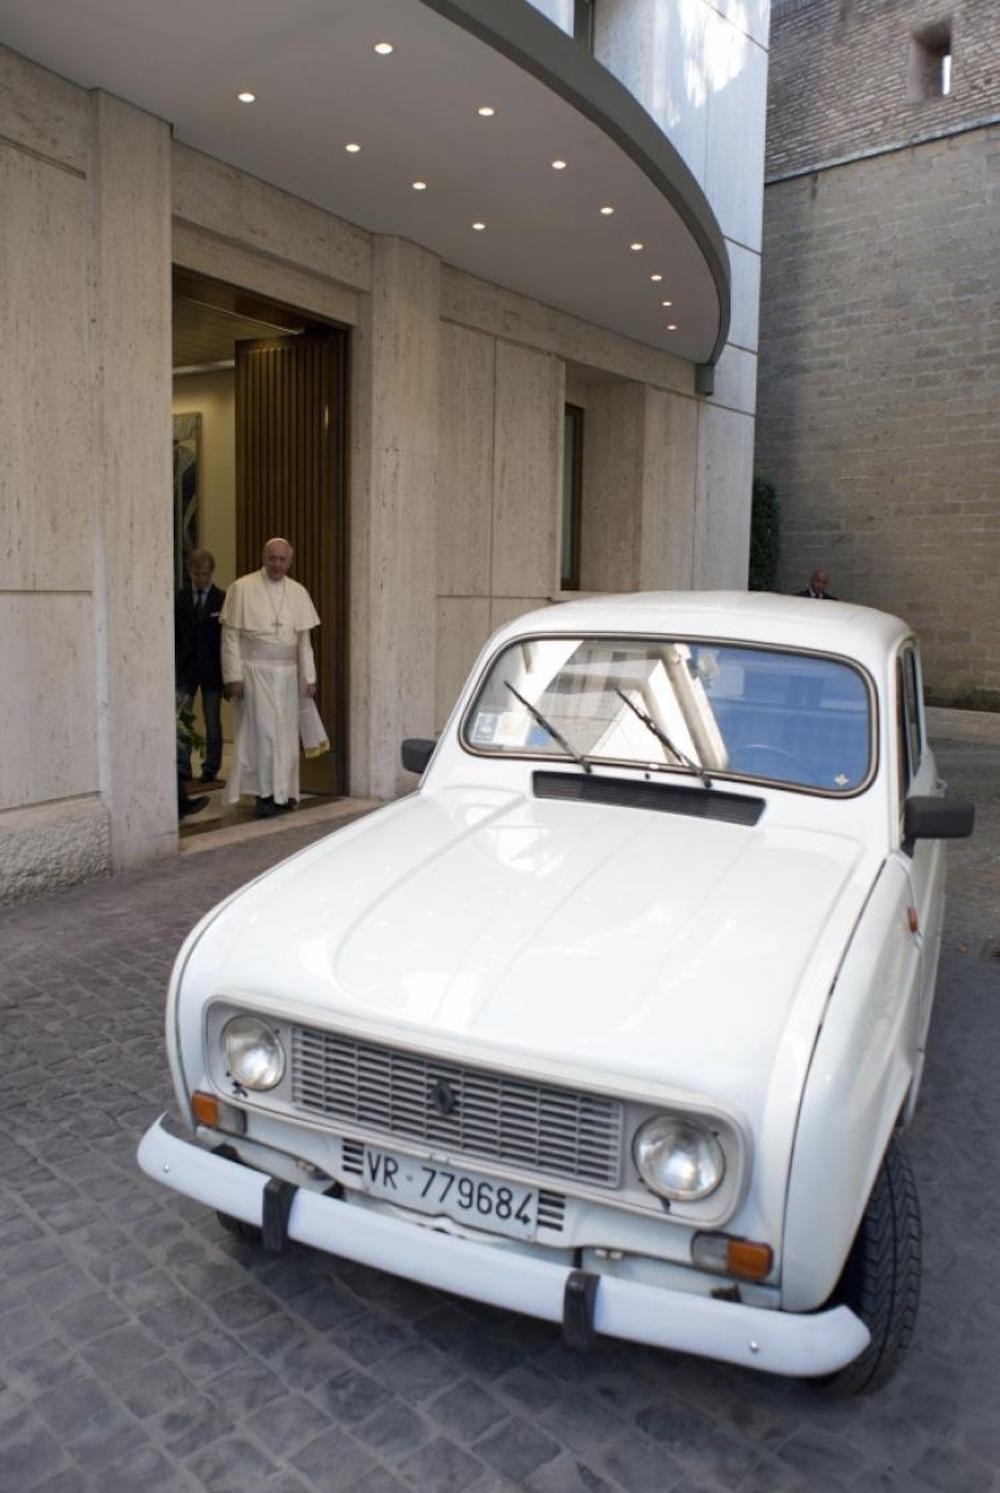 Giáo Hoàng Francis được tặng siêu xe Lamborghini Huracan “hàng thửa“ ảnh 6